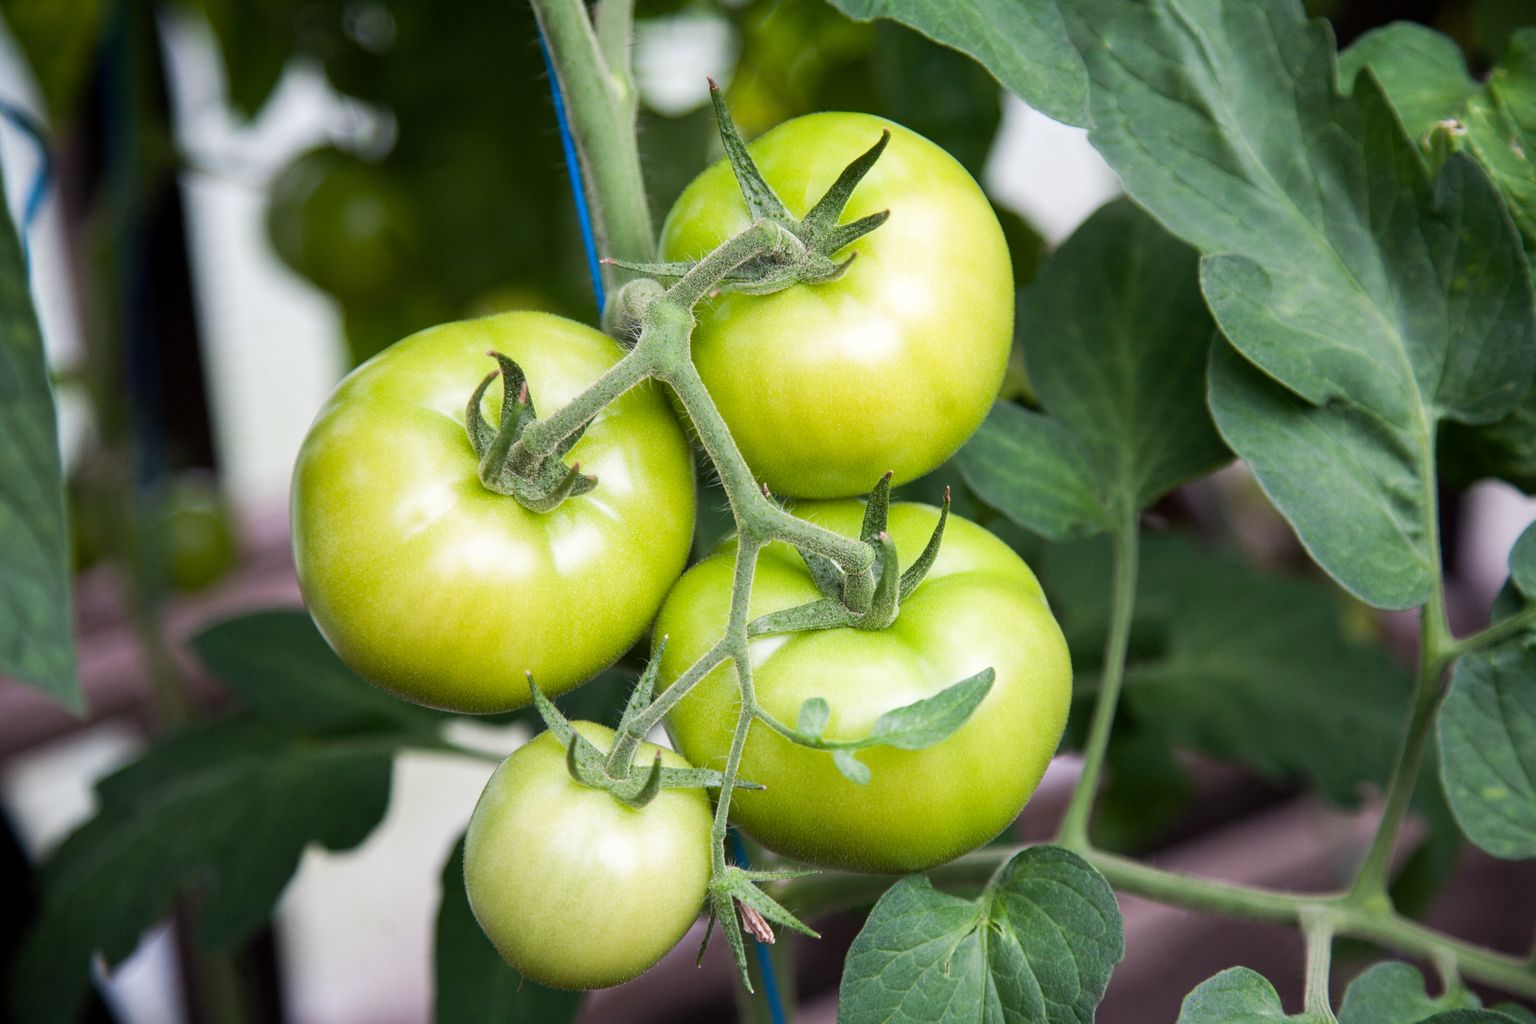 Venemaa tomatisorte on Eestis ammusest ajast kasvatatud ja väga hinnatud, kuid neid praegu tuua ei saa. Põhjuseks pole mitte nii palju haiguste ennetamine, vaid bürokraatia.